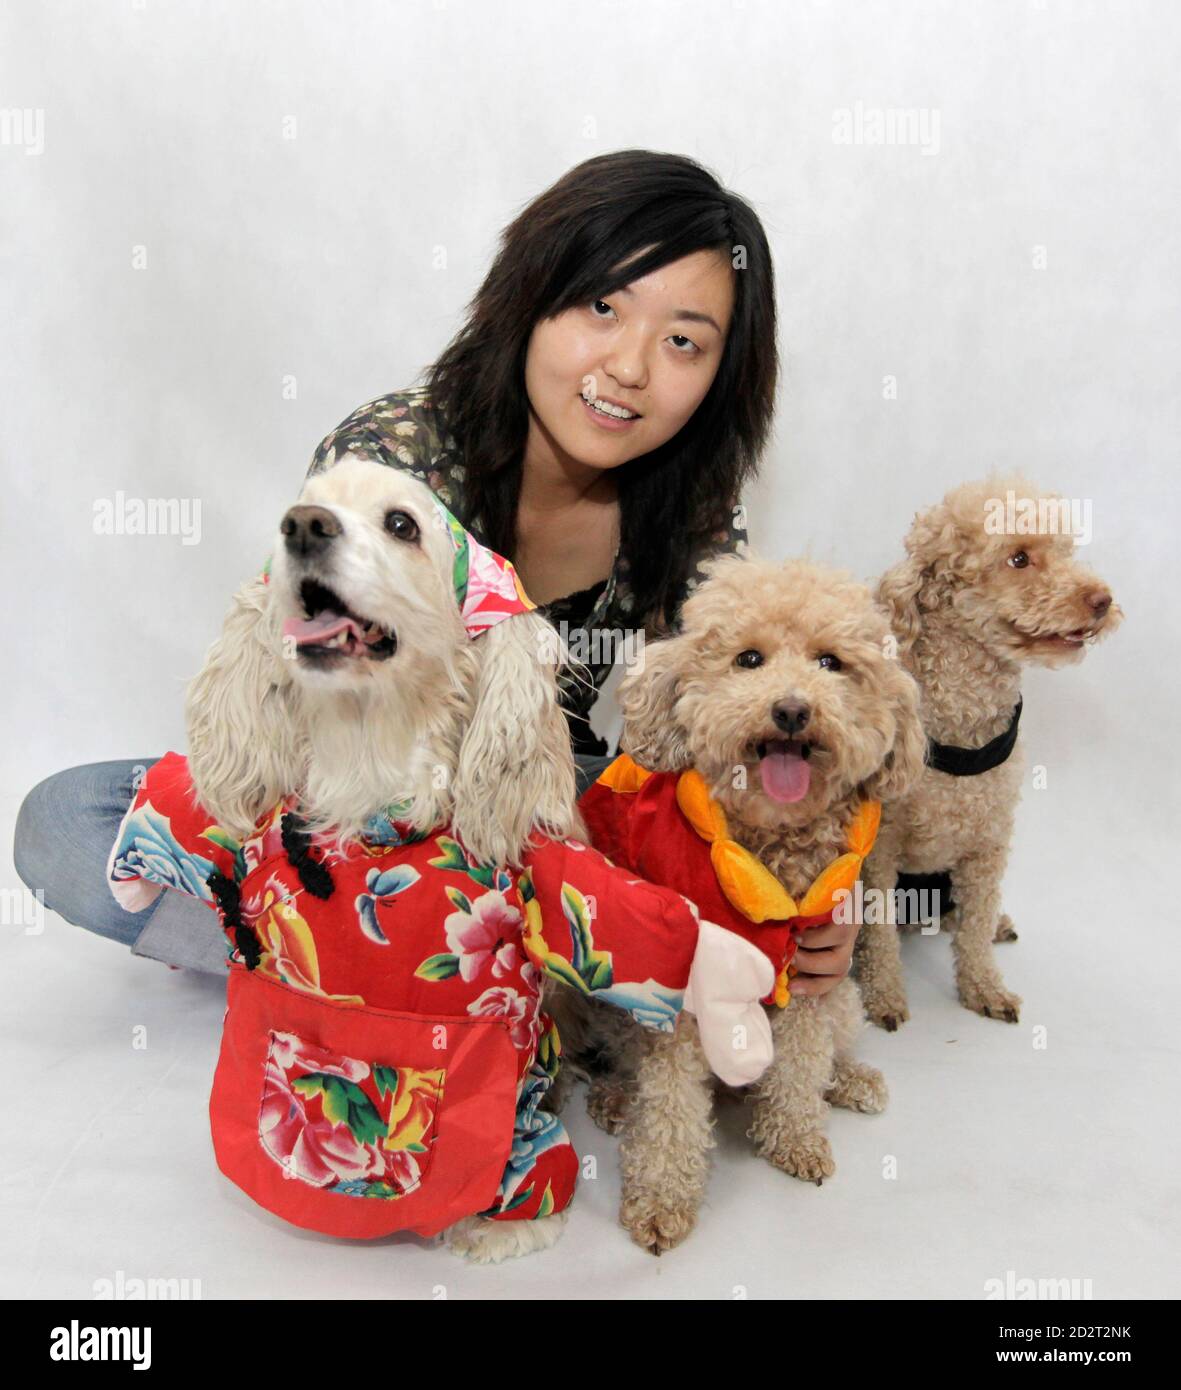 La diseñadora Hu Xi posará con sus perros de mascotas mientras llevan trajes  diseñados por ella en Beijing el 10 de junio de 2009. Hu, de 27 años,  comenzó a diseñar y